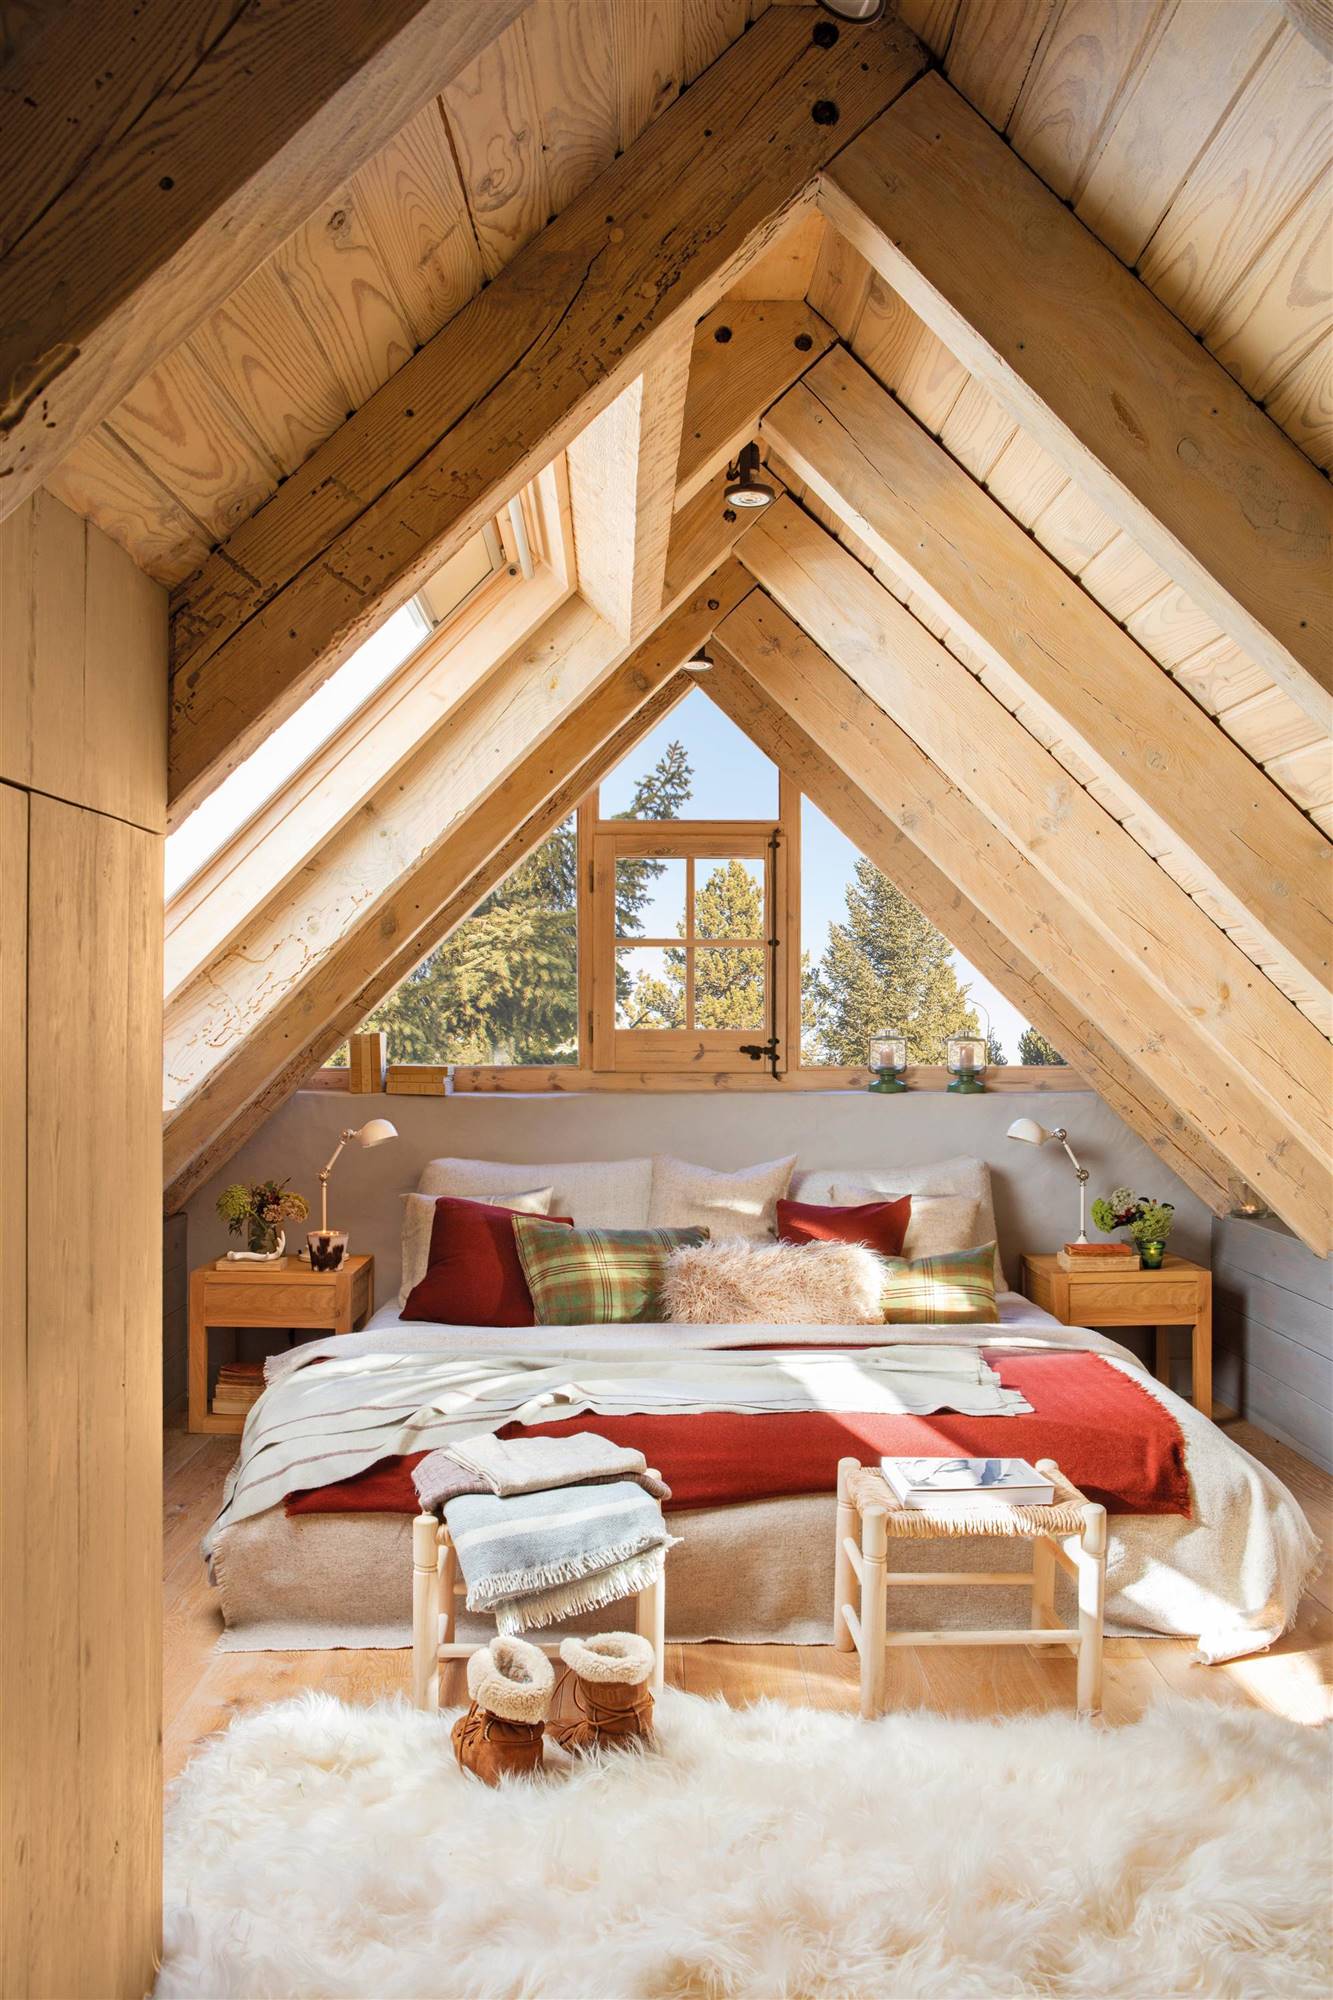 Dormitorio abuhardillado con vigas de madera y dos banqquetas a los pies de la cama.